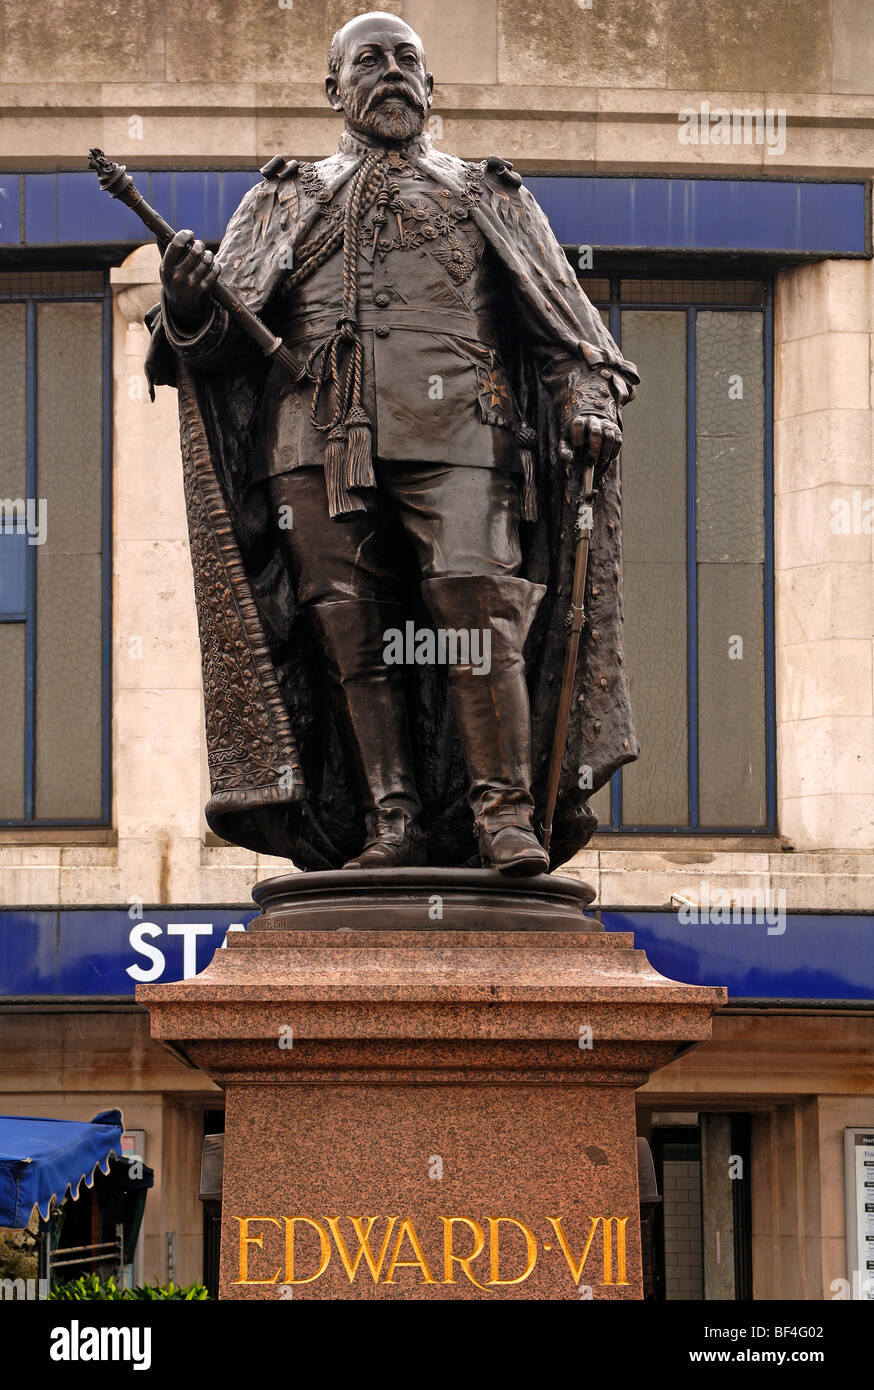 Statua di re Edoardo VII, 1841-1910, nella stazione della metropolitana Tooting Broadway, Tooting, London, England, Regno Unito, Europa Foto Stock